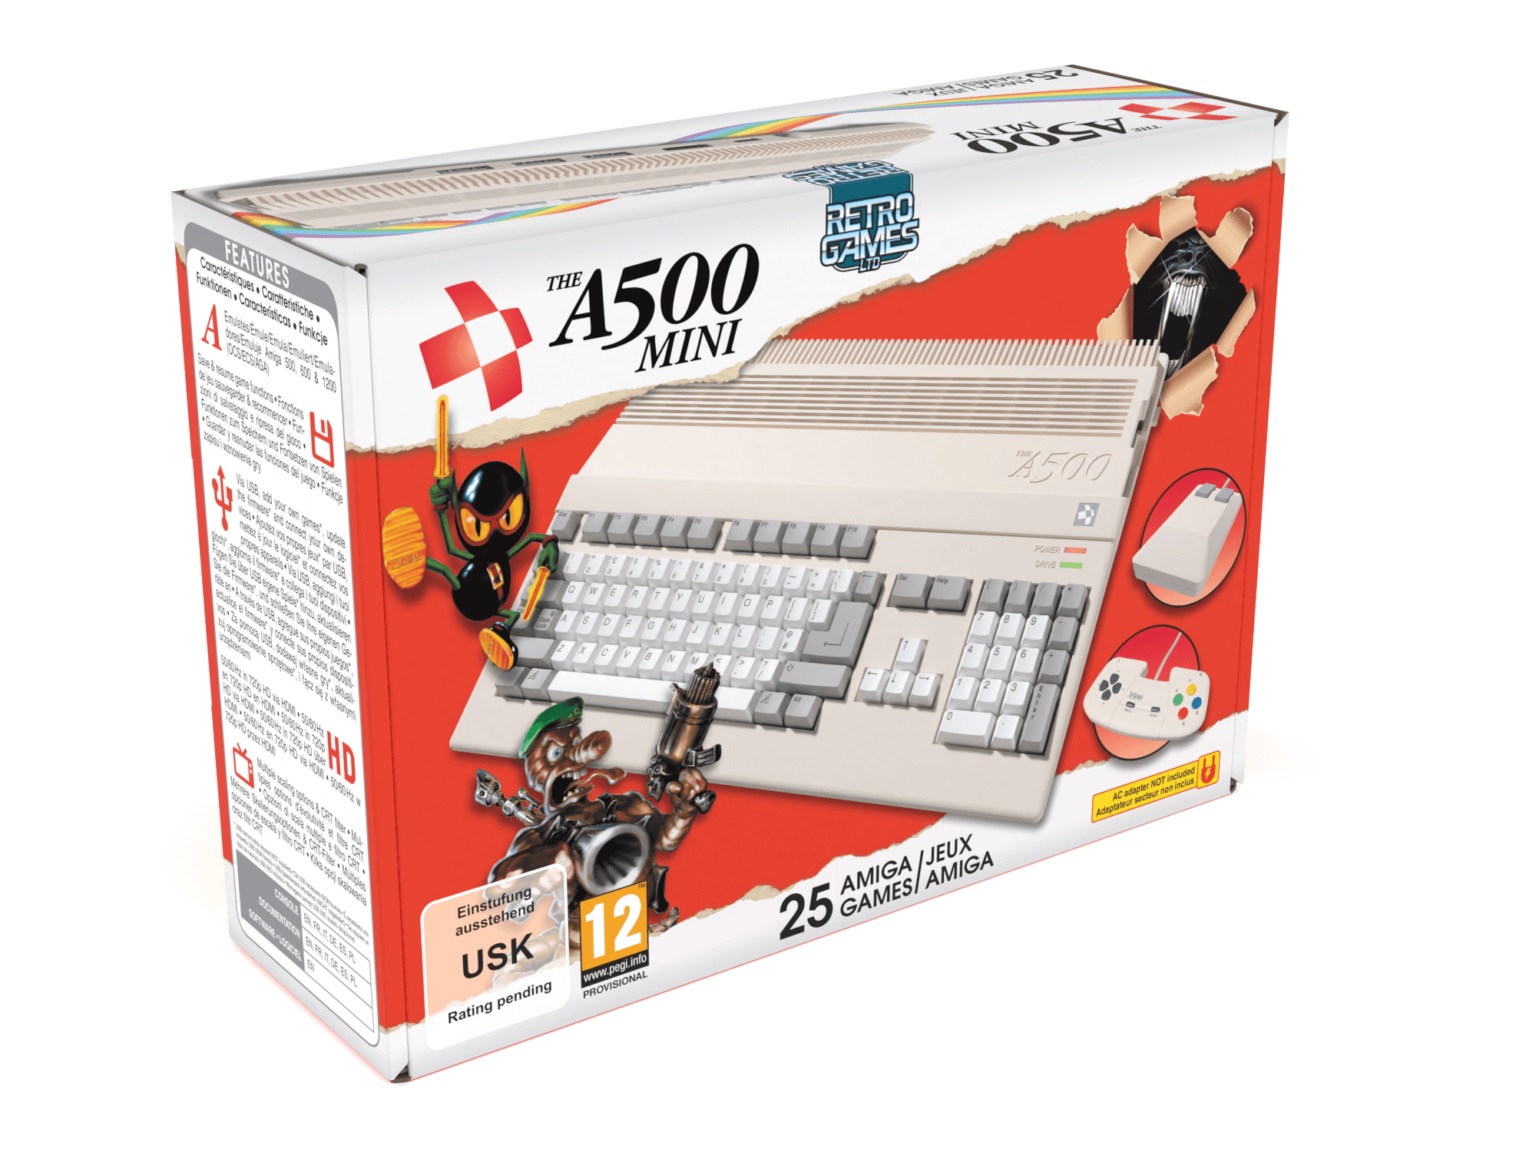 Amiga 500 A500 boaty